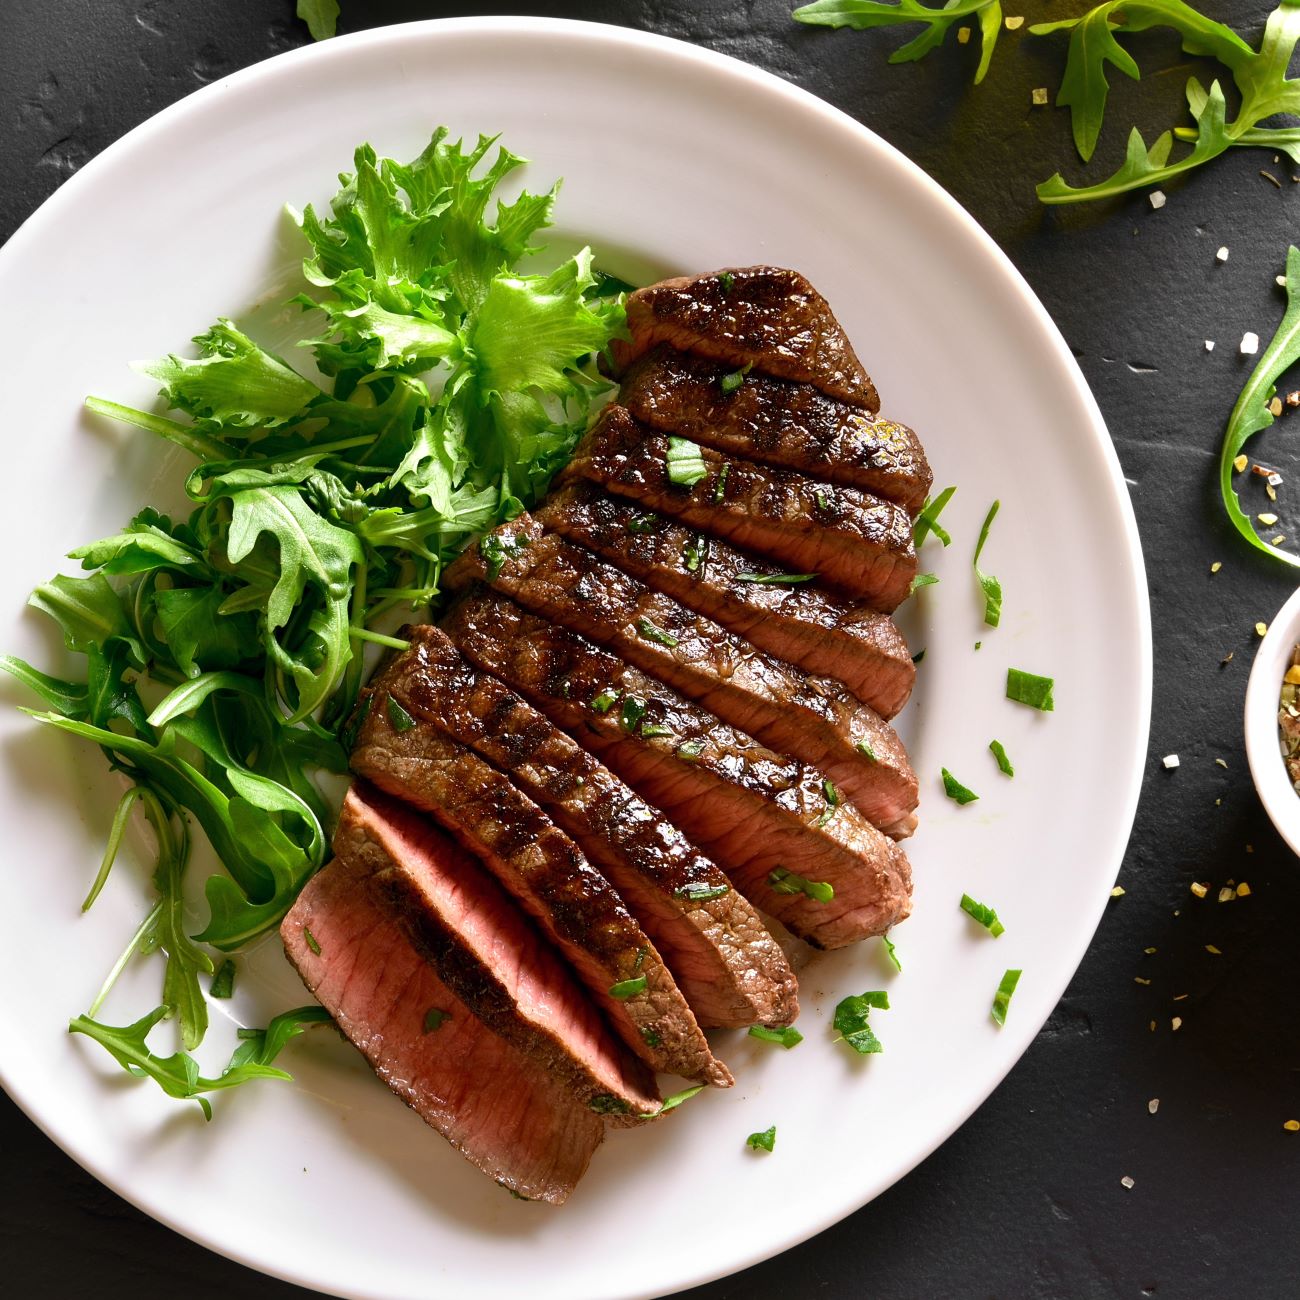 Steak aus der Heißluftfritteuse wird angeschnitten von oben mit Salat gezeigt.